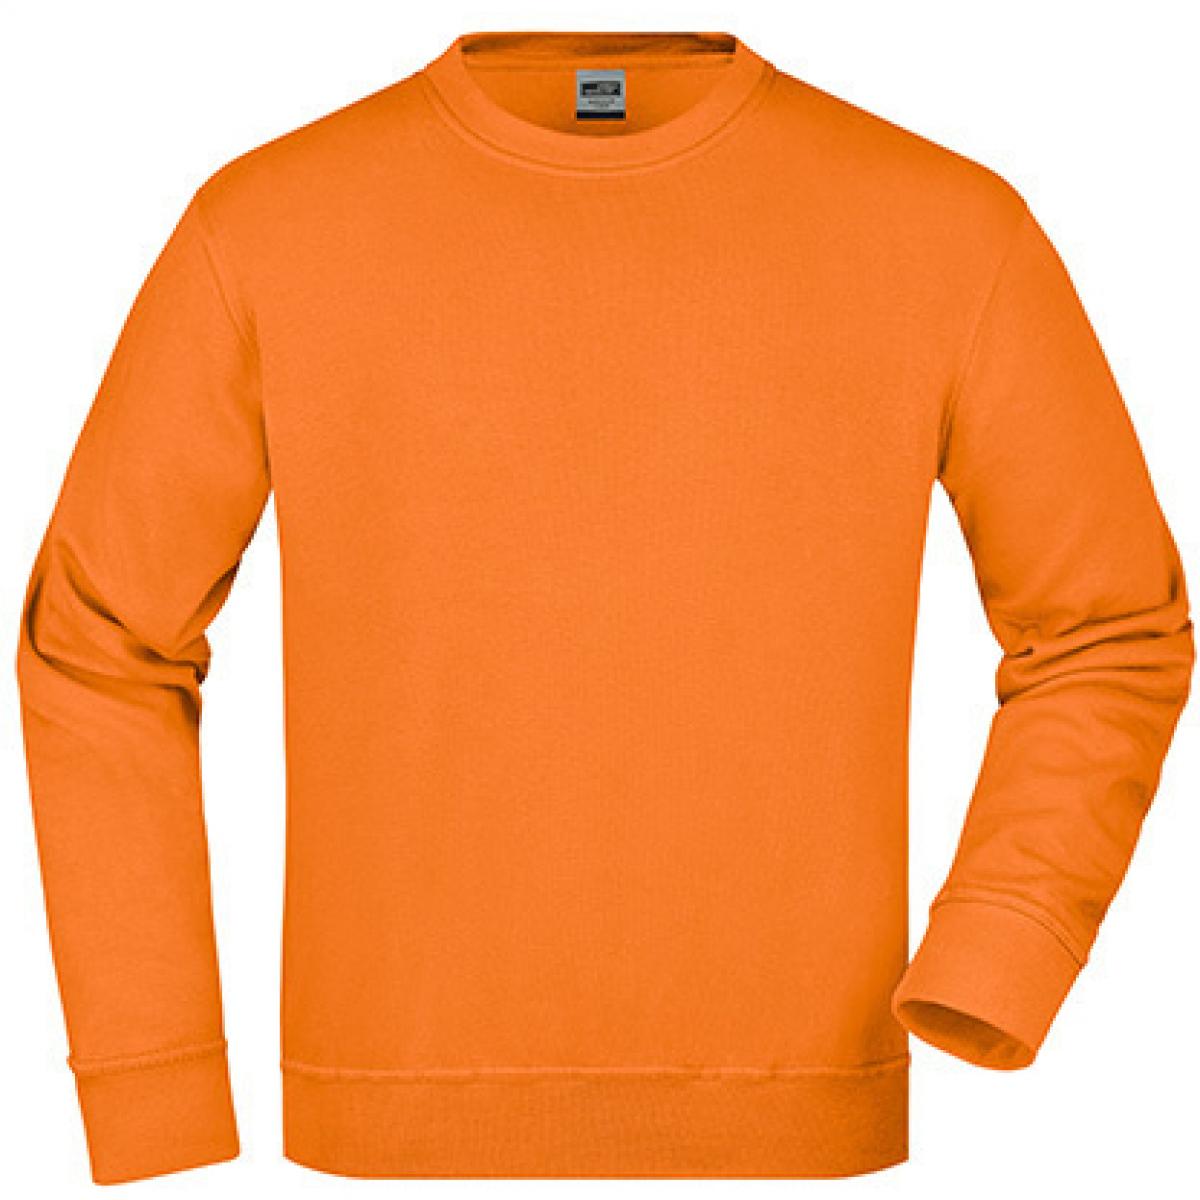 Hersteller: James+Nicholson Herstellernummer: JN840 Artikelbezeichnung: Workwear Sweatshirt / Waschbar bis 60C Farbe: Orange